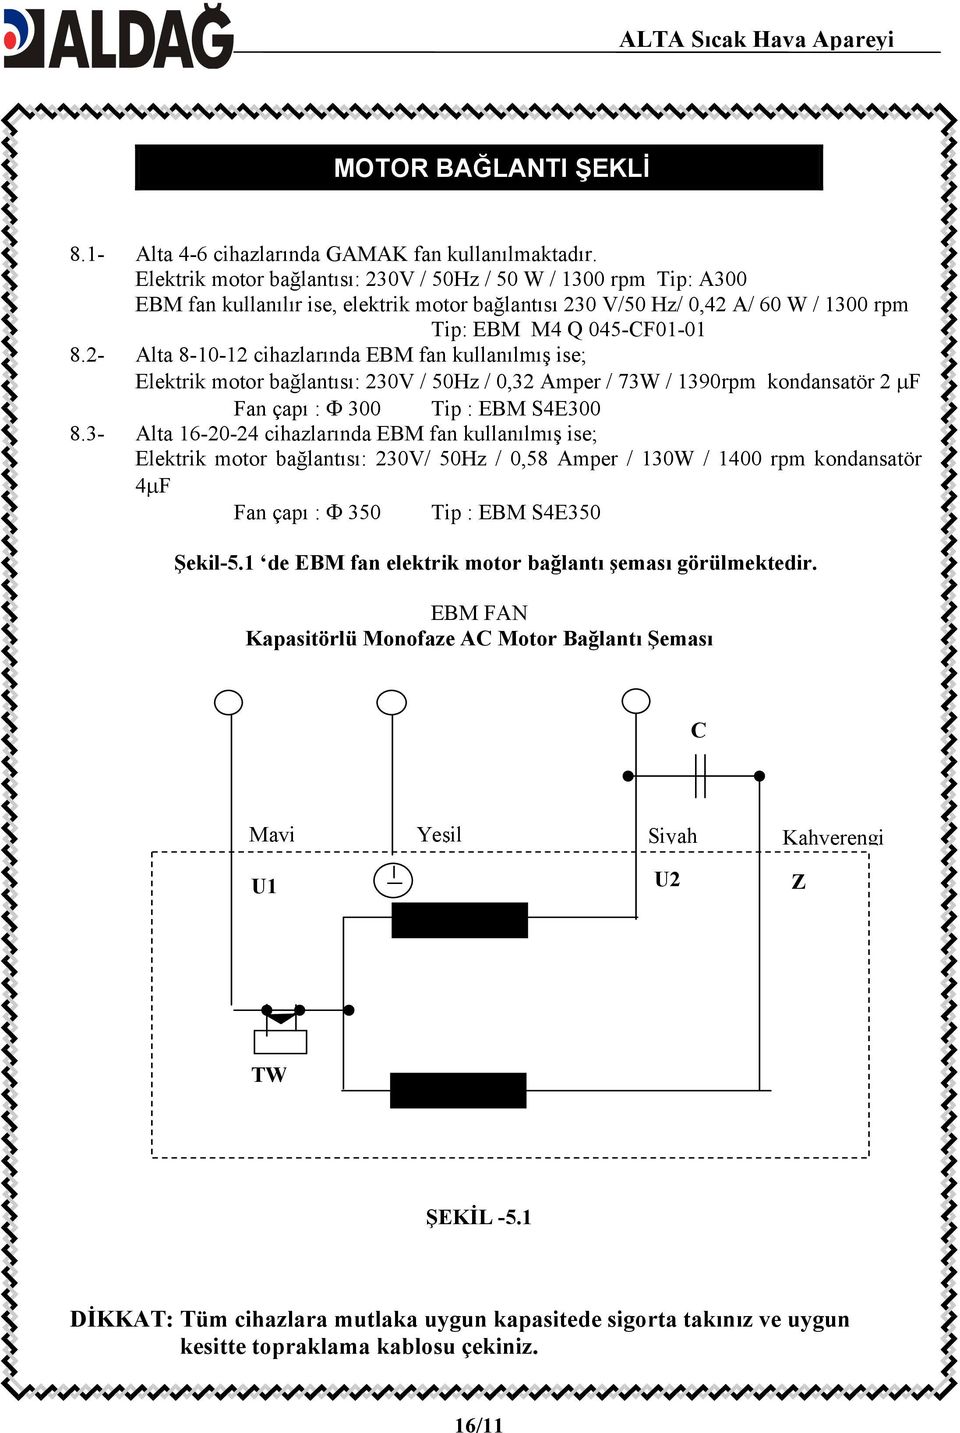 2- Alta 8-10-12 cihazlarında EBM fan kullanılmış ise; Elektrik motor bağlantısı: 230V / 50Hz / 0,32 Amper / 73W / 1390rpm kondansatör 2 μf Fan çapı : Φ 300 Tip : EBM S4E300 8.